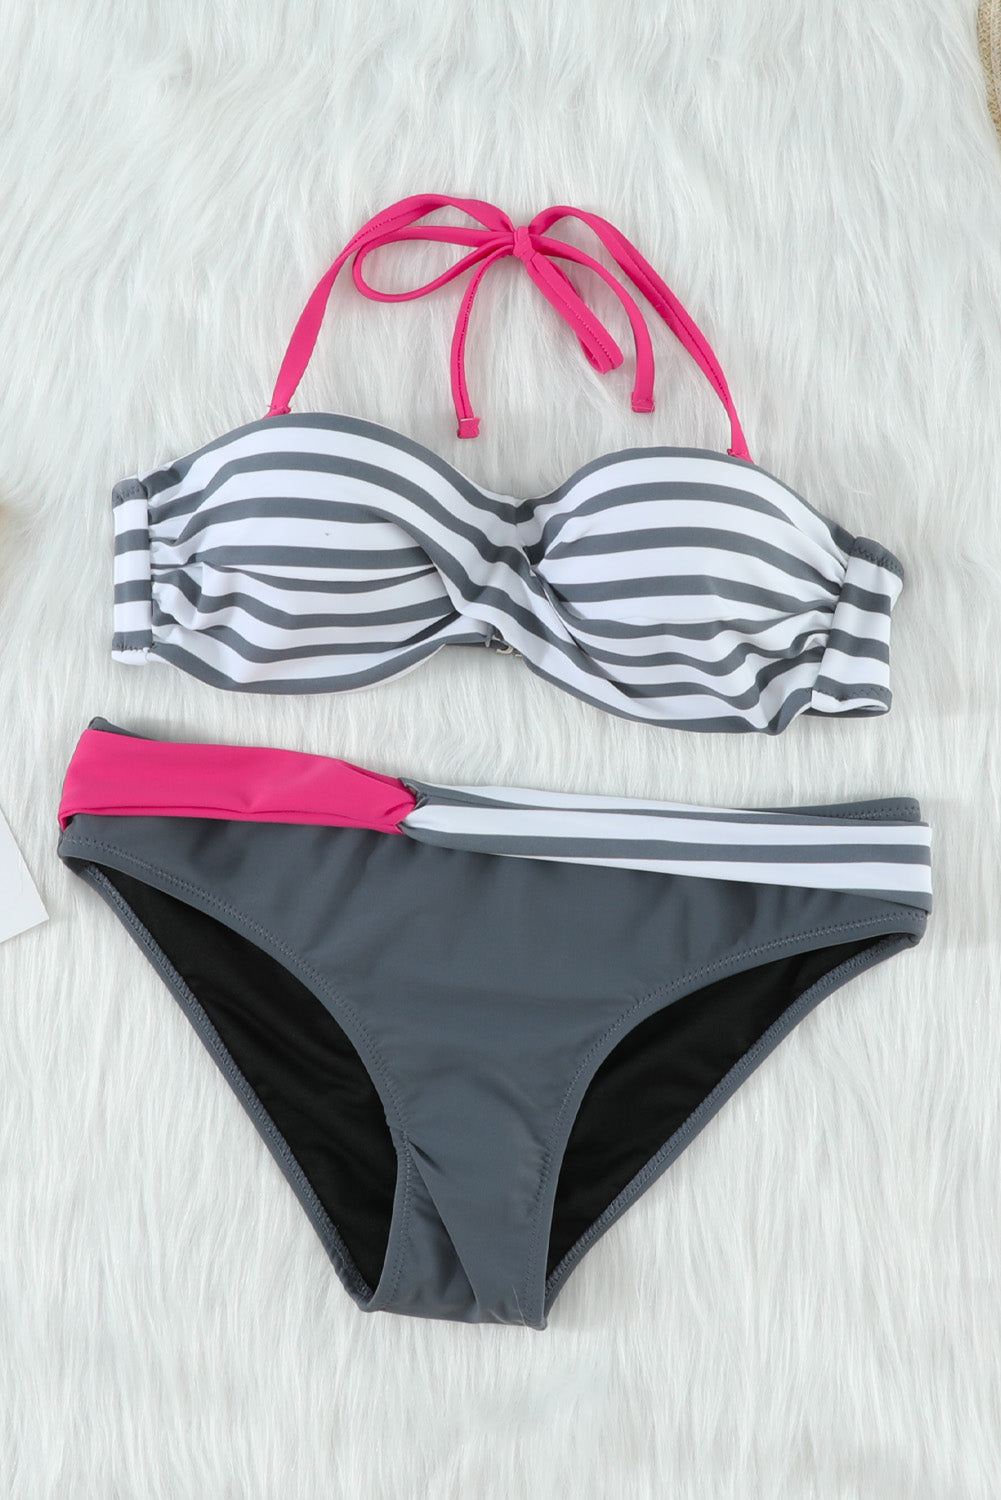 【victoria secret】Gray Halter Bandeau Striped Bikini